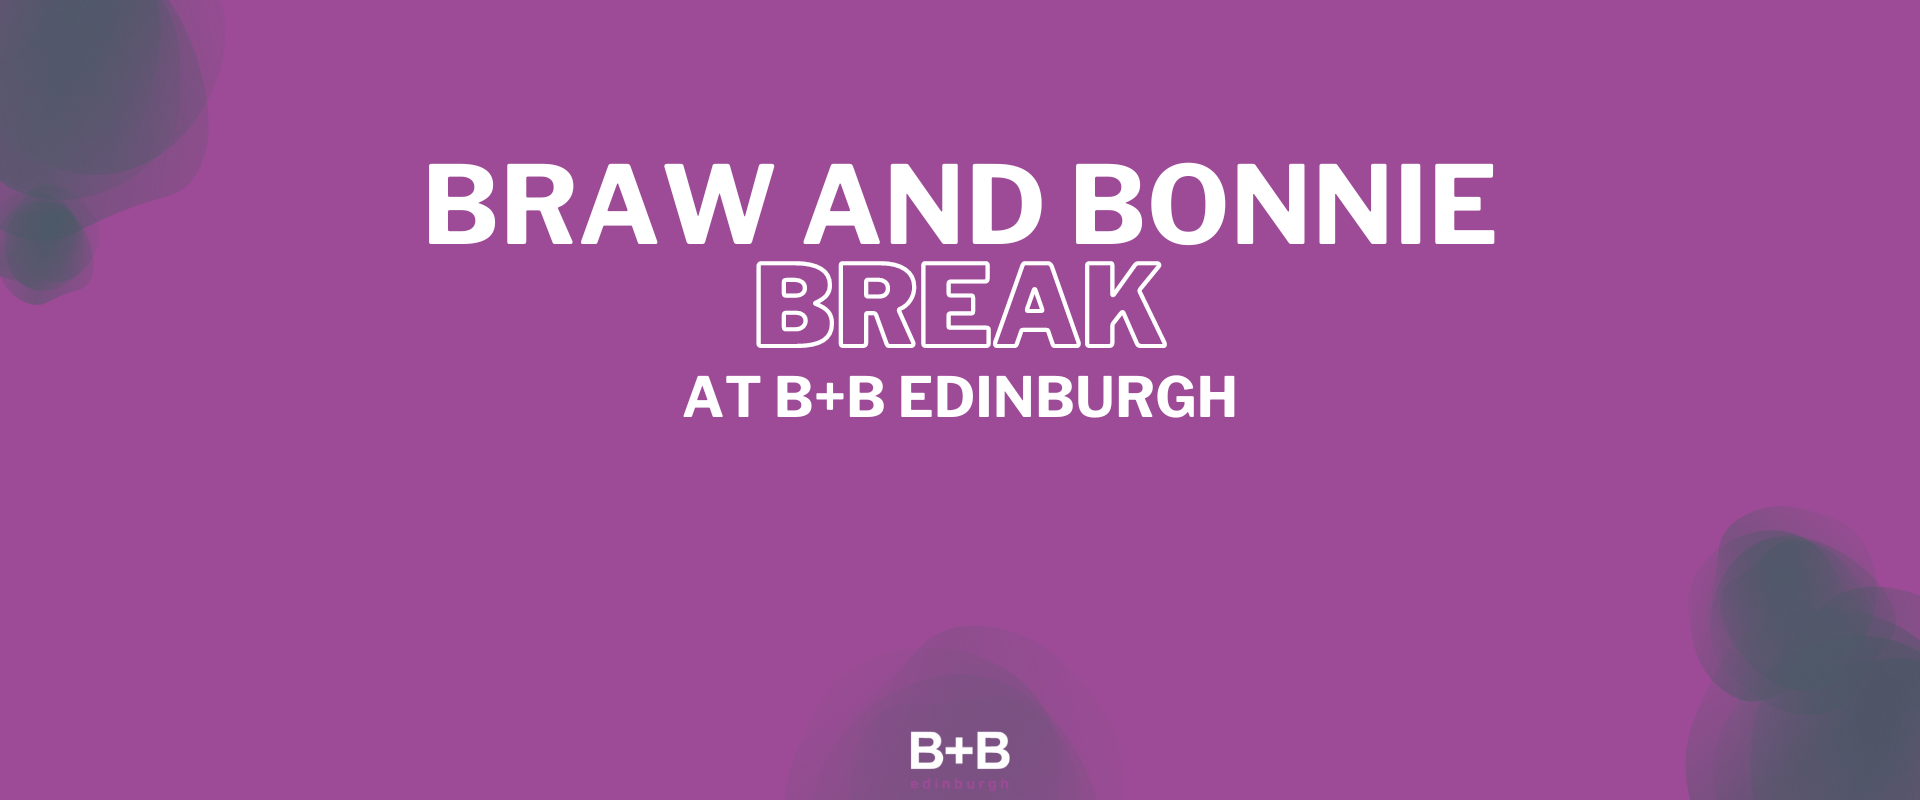 Braw & Bonnie Break at B+B Edinburgh